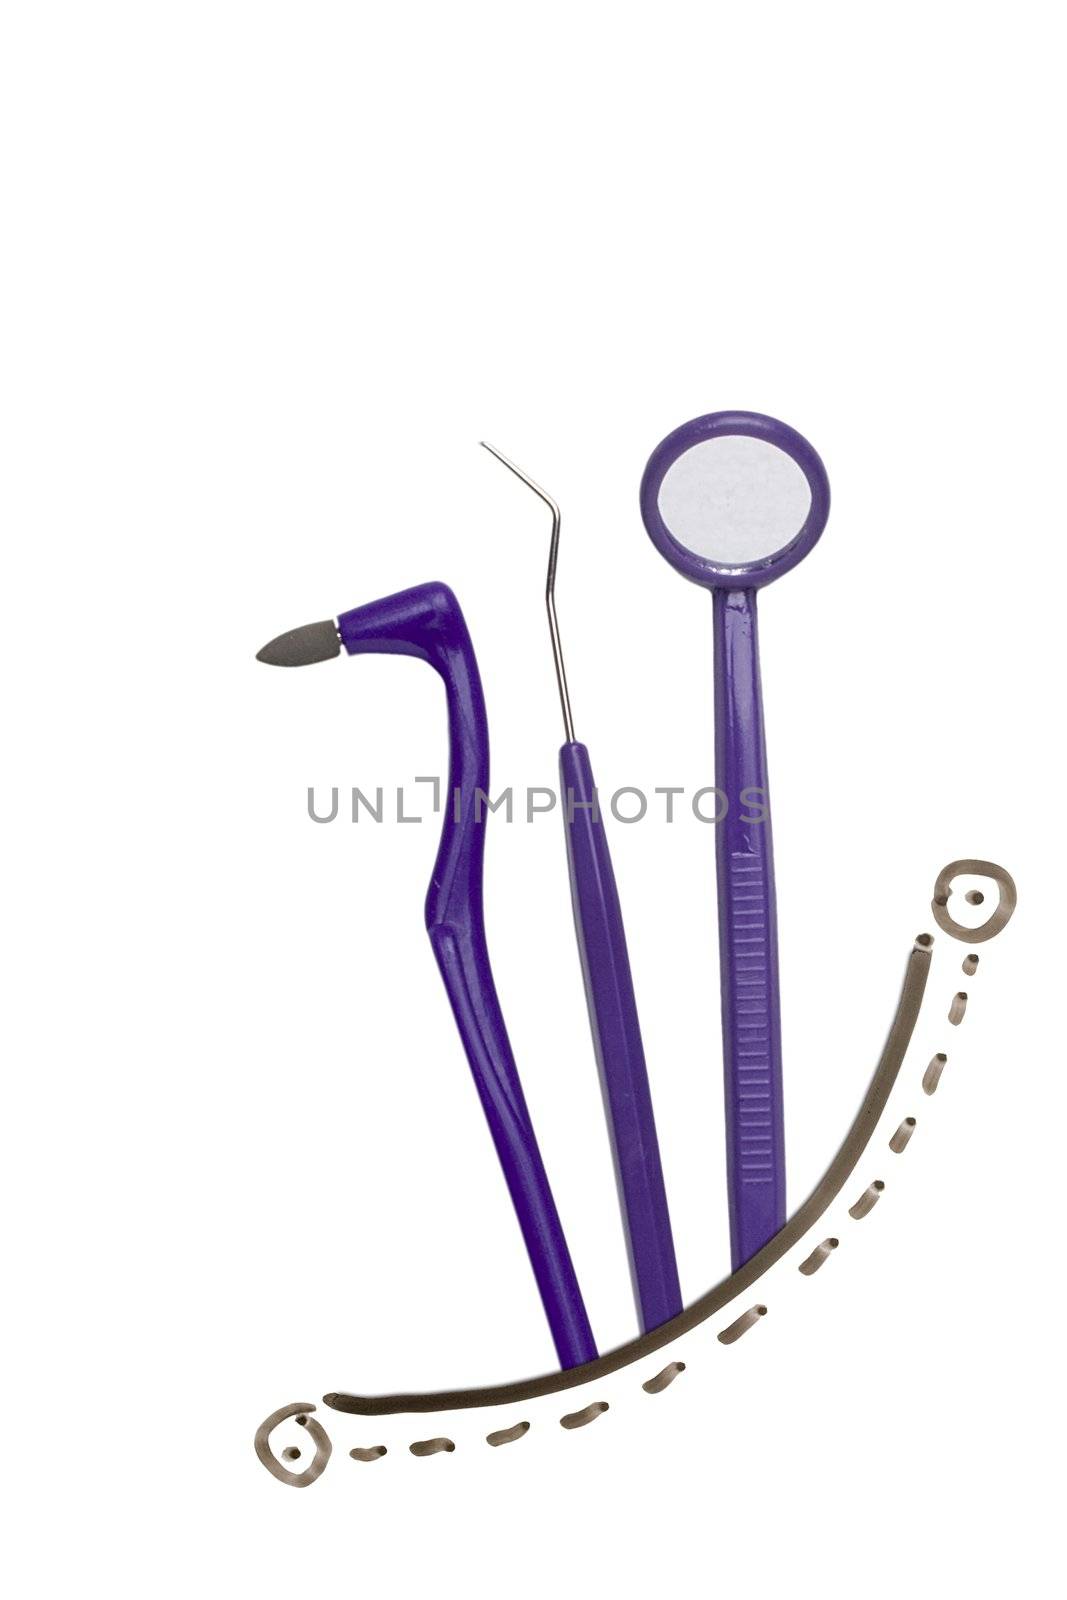 Dental tools by VIPDesignUSA